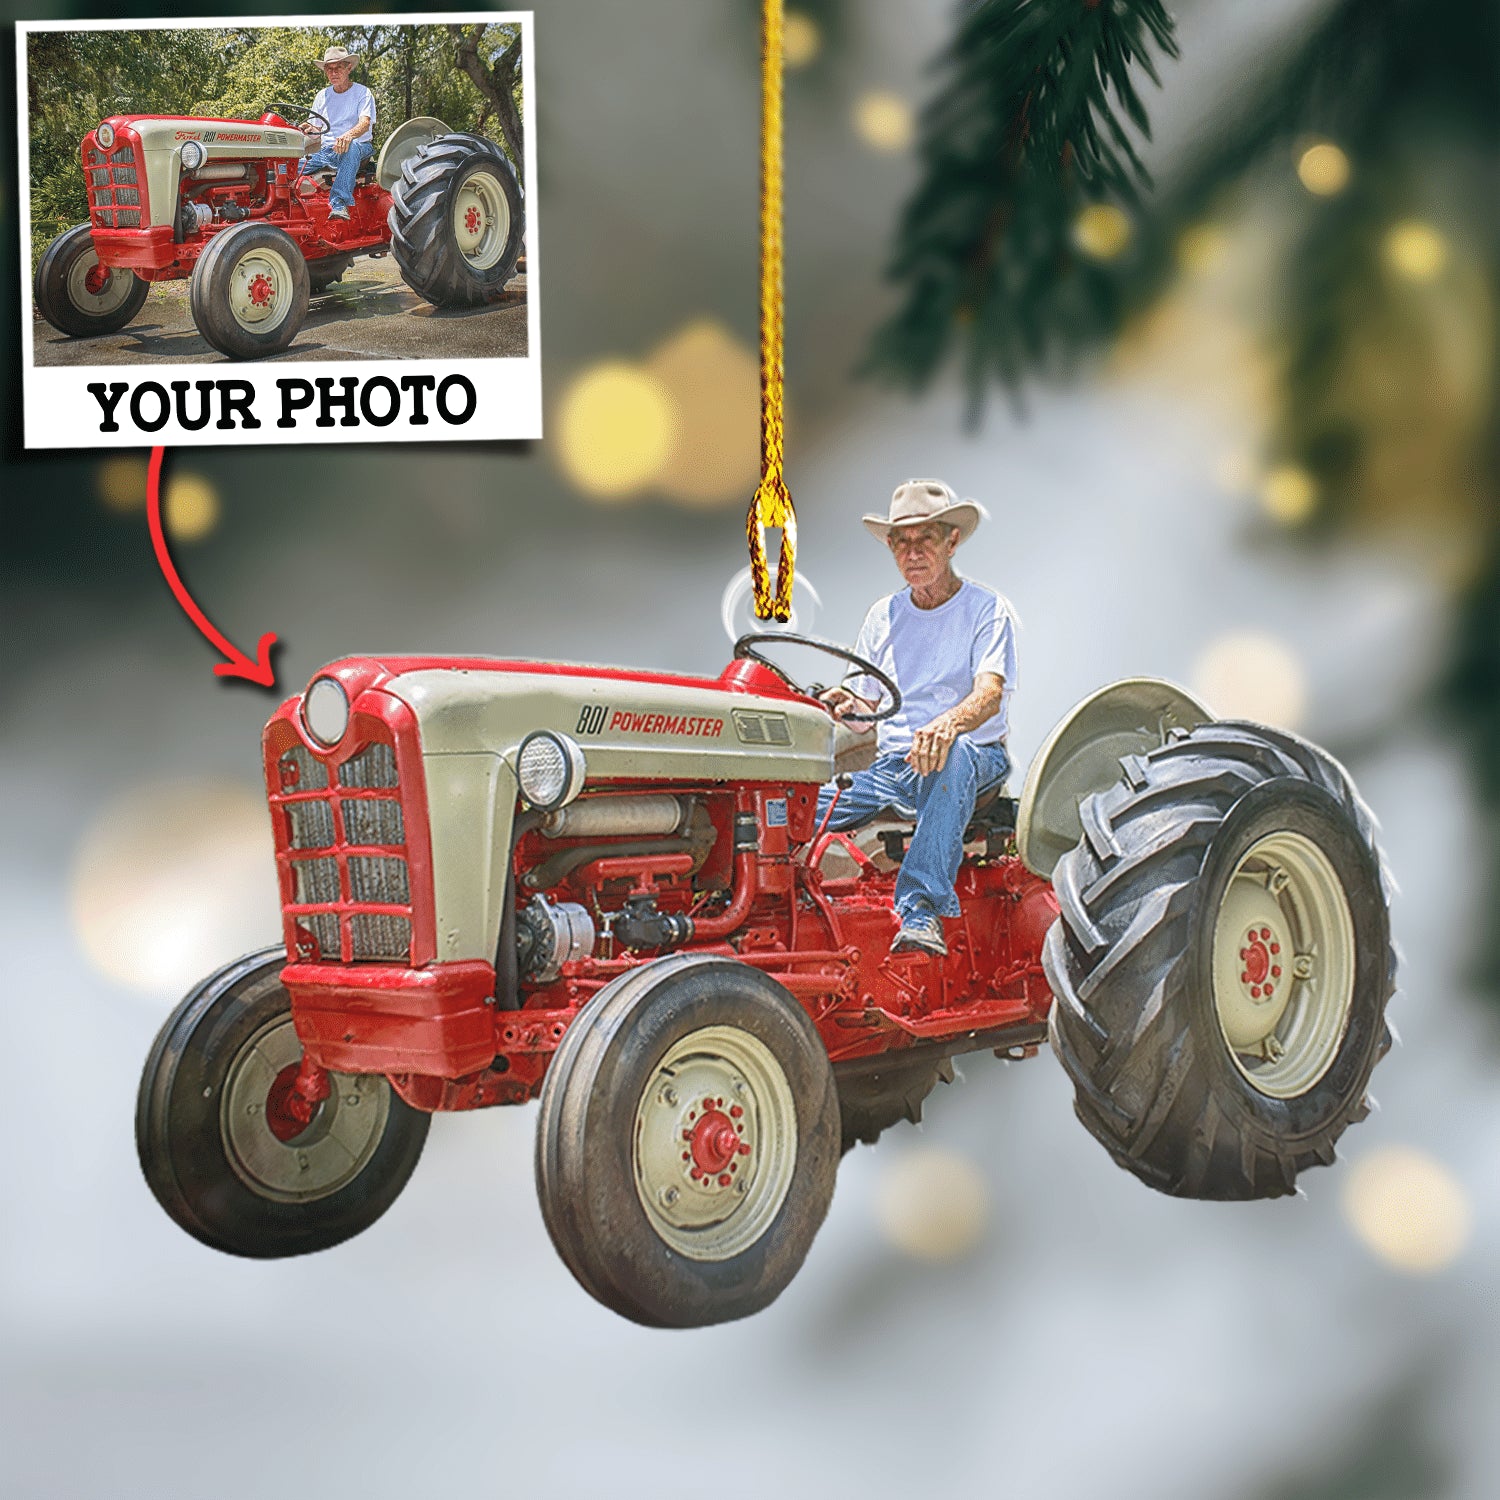 Custom Photo Ornament Gift For Farmer - Personalized Photo Ornament Gift For Farmers